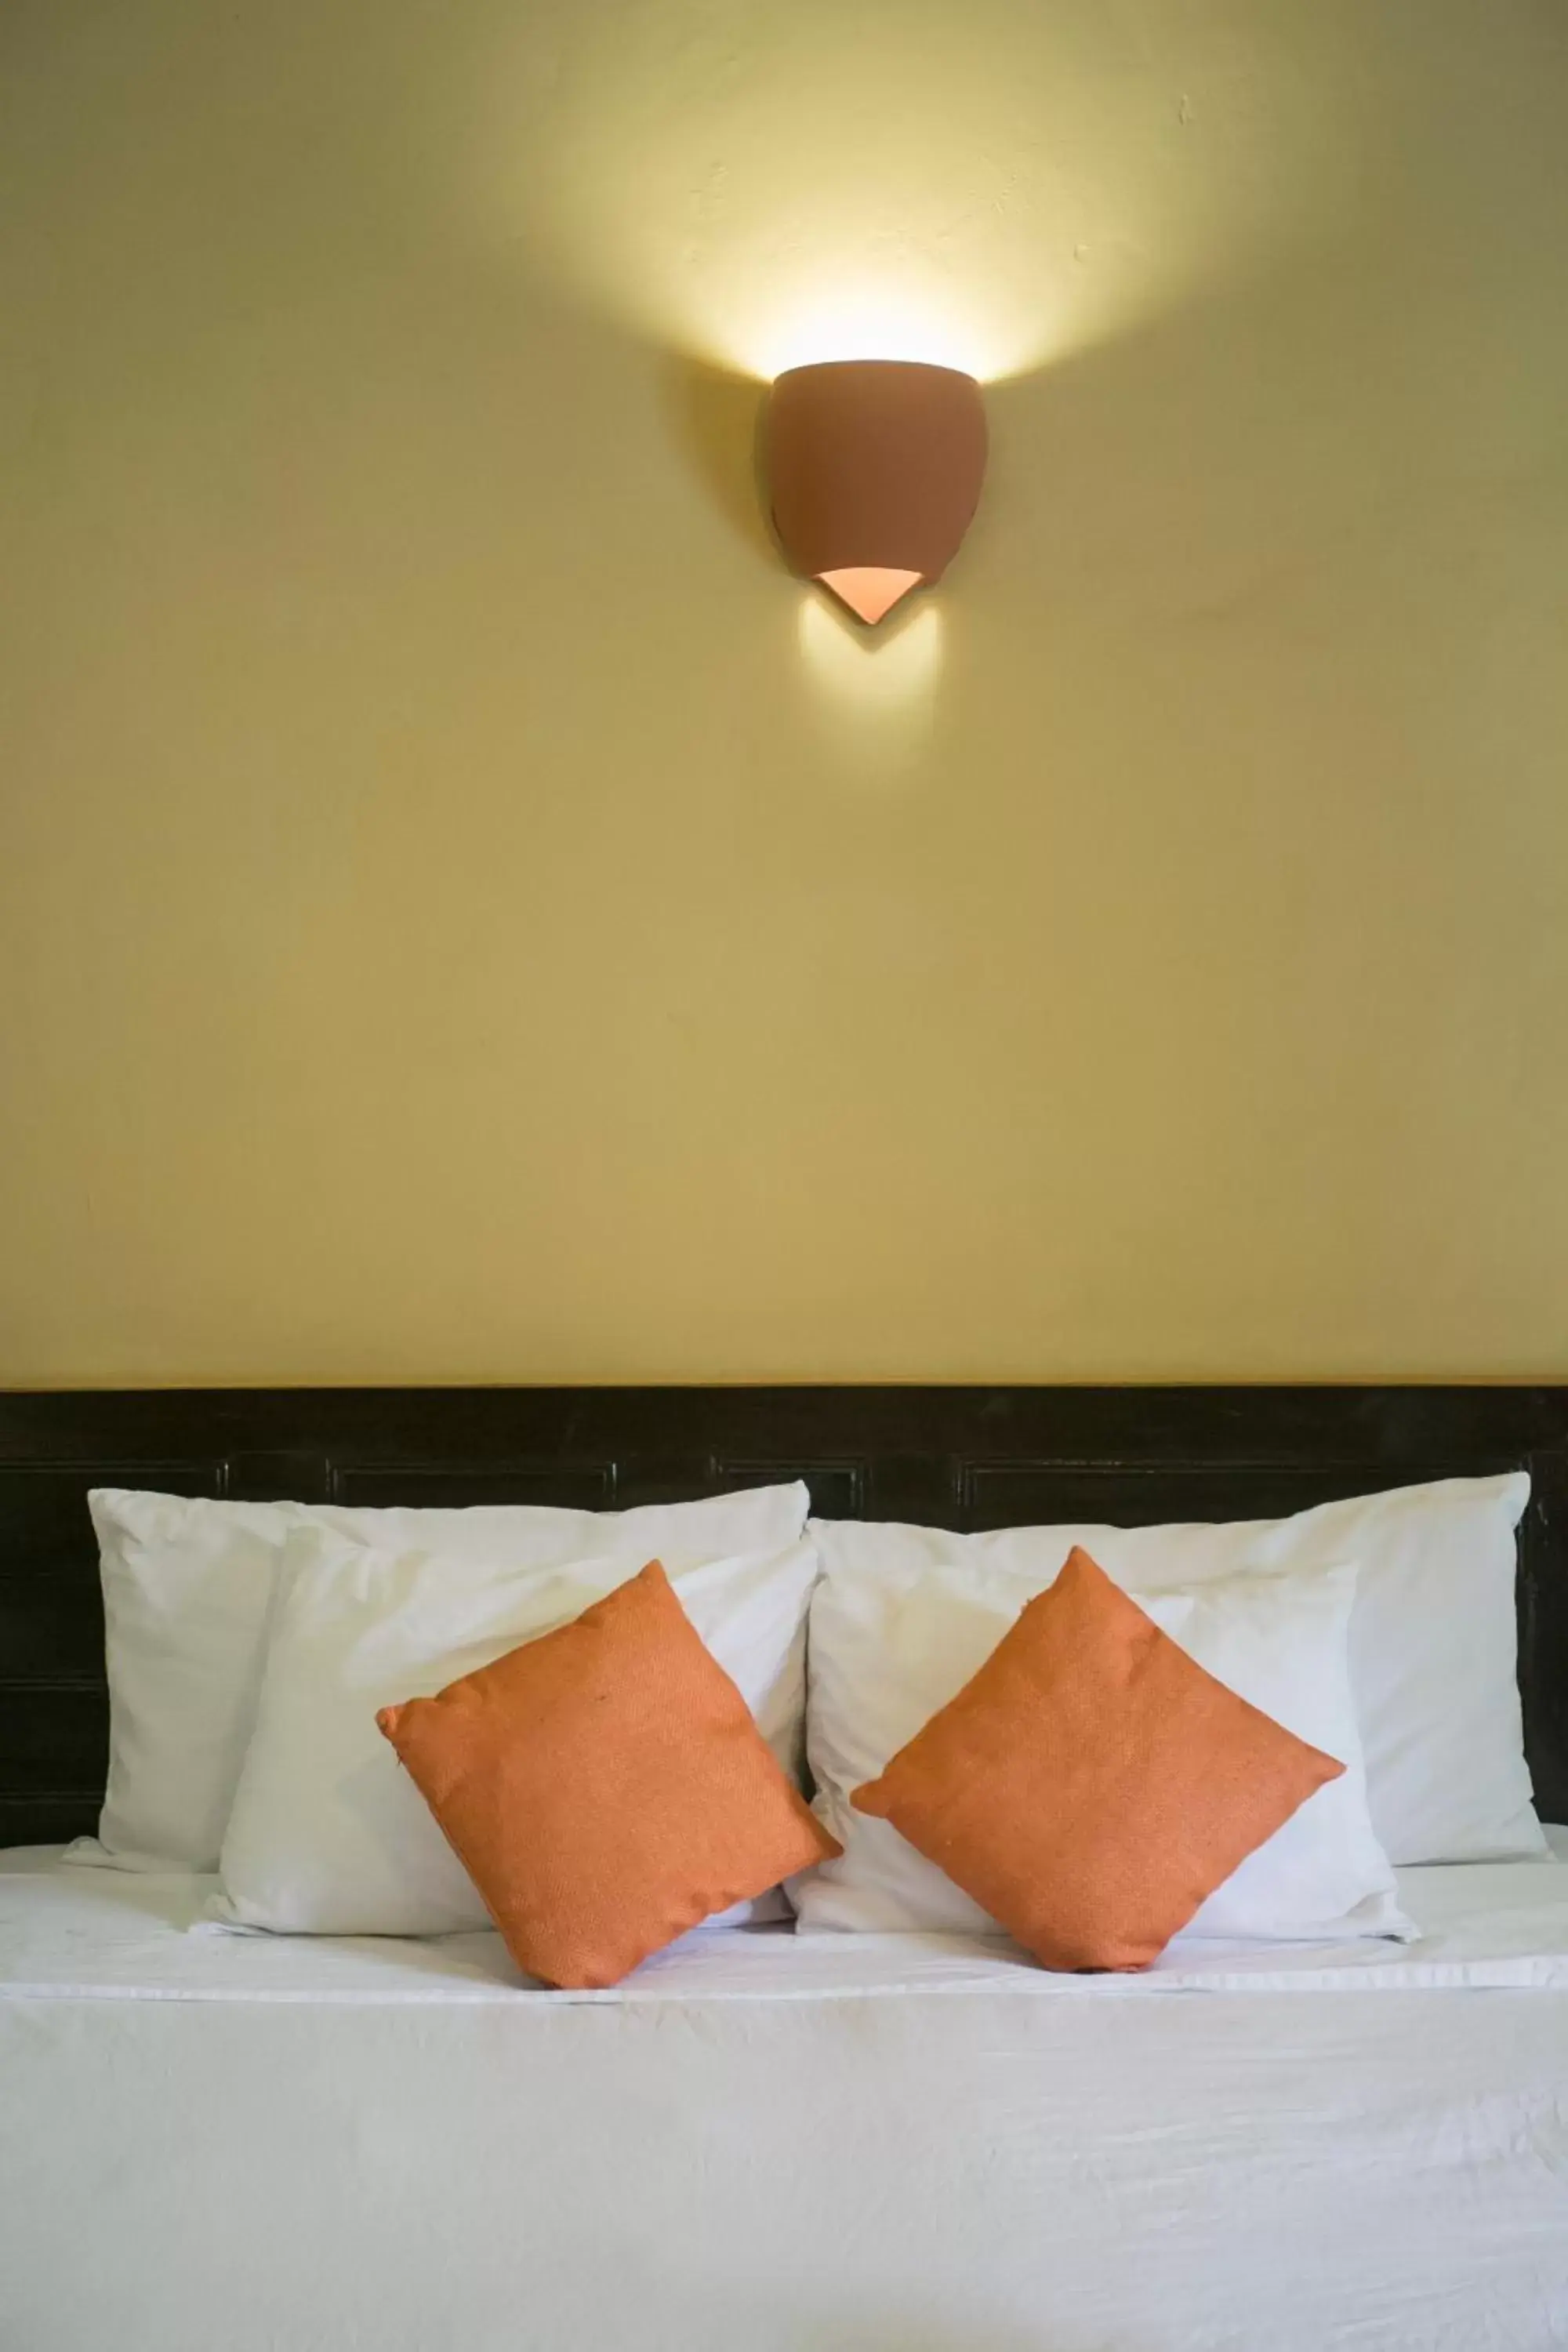 Bed in Hotel Casa del Consulado